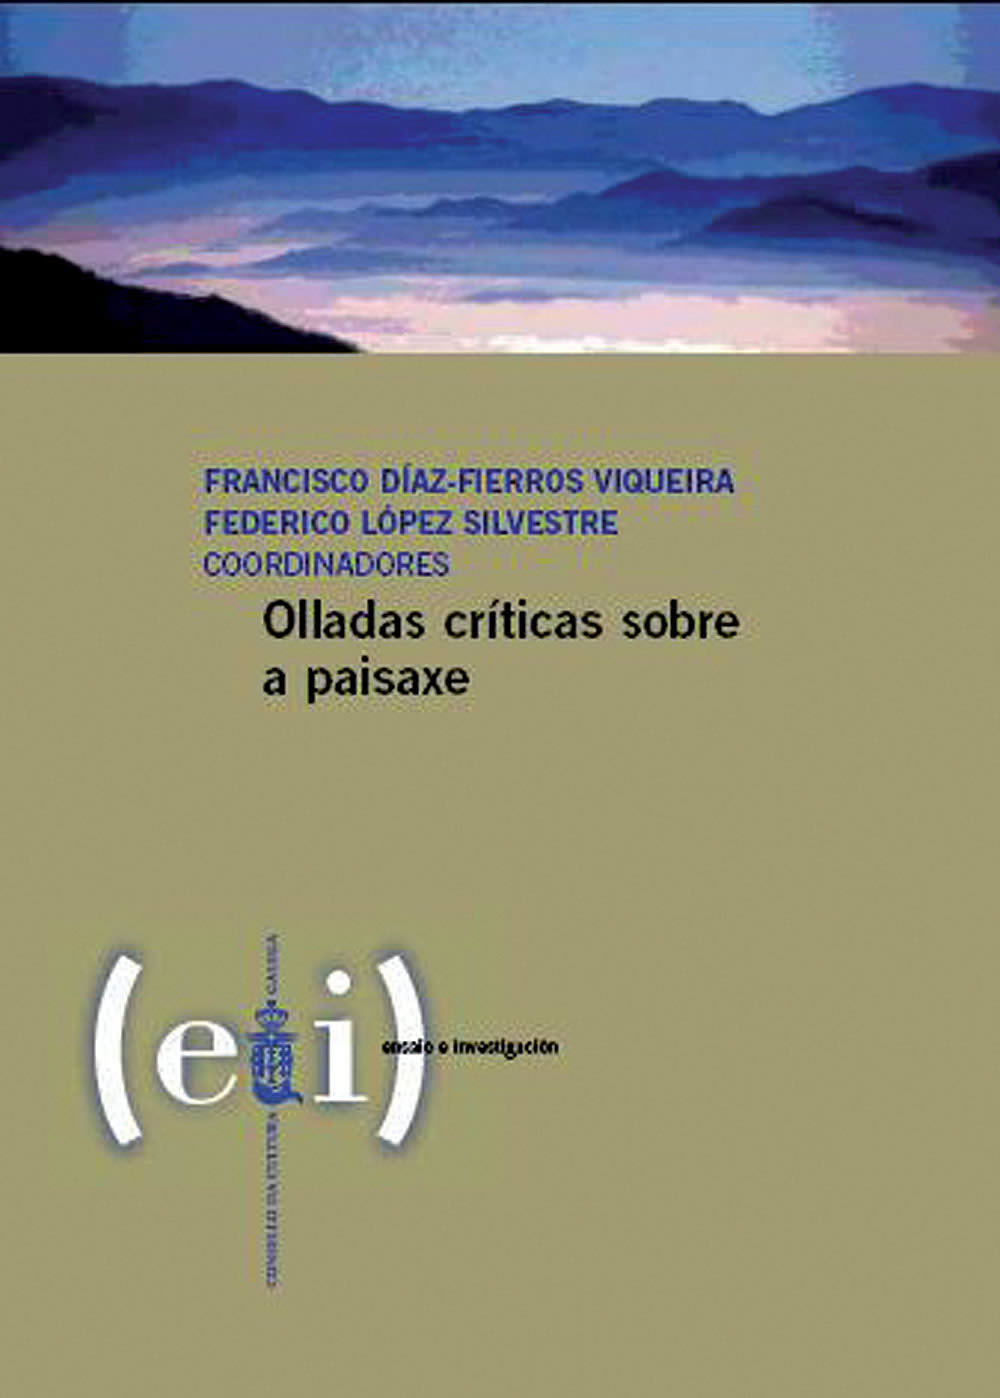 Imagen de portada del libro Olladas críticas sobre a paisaxe